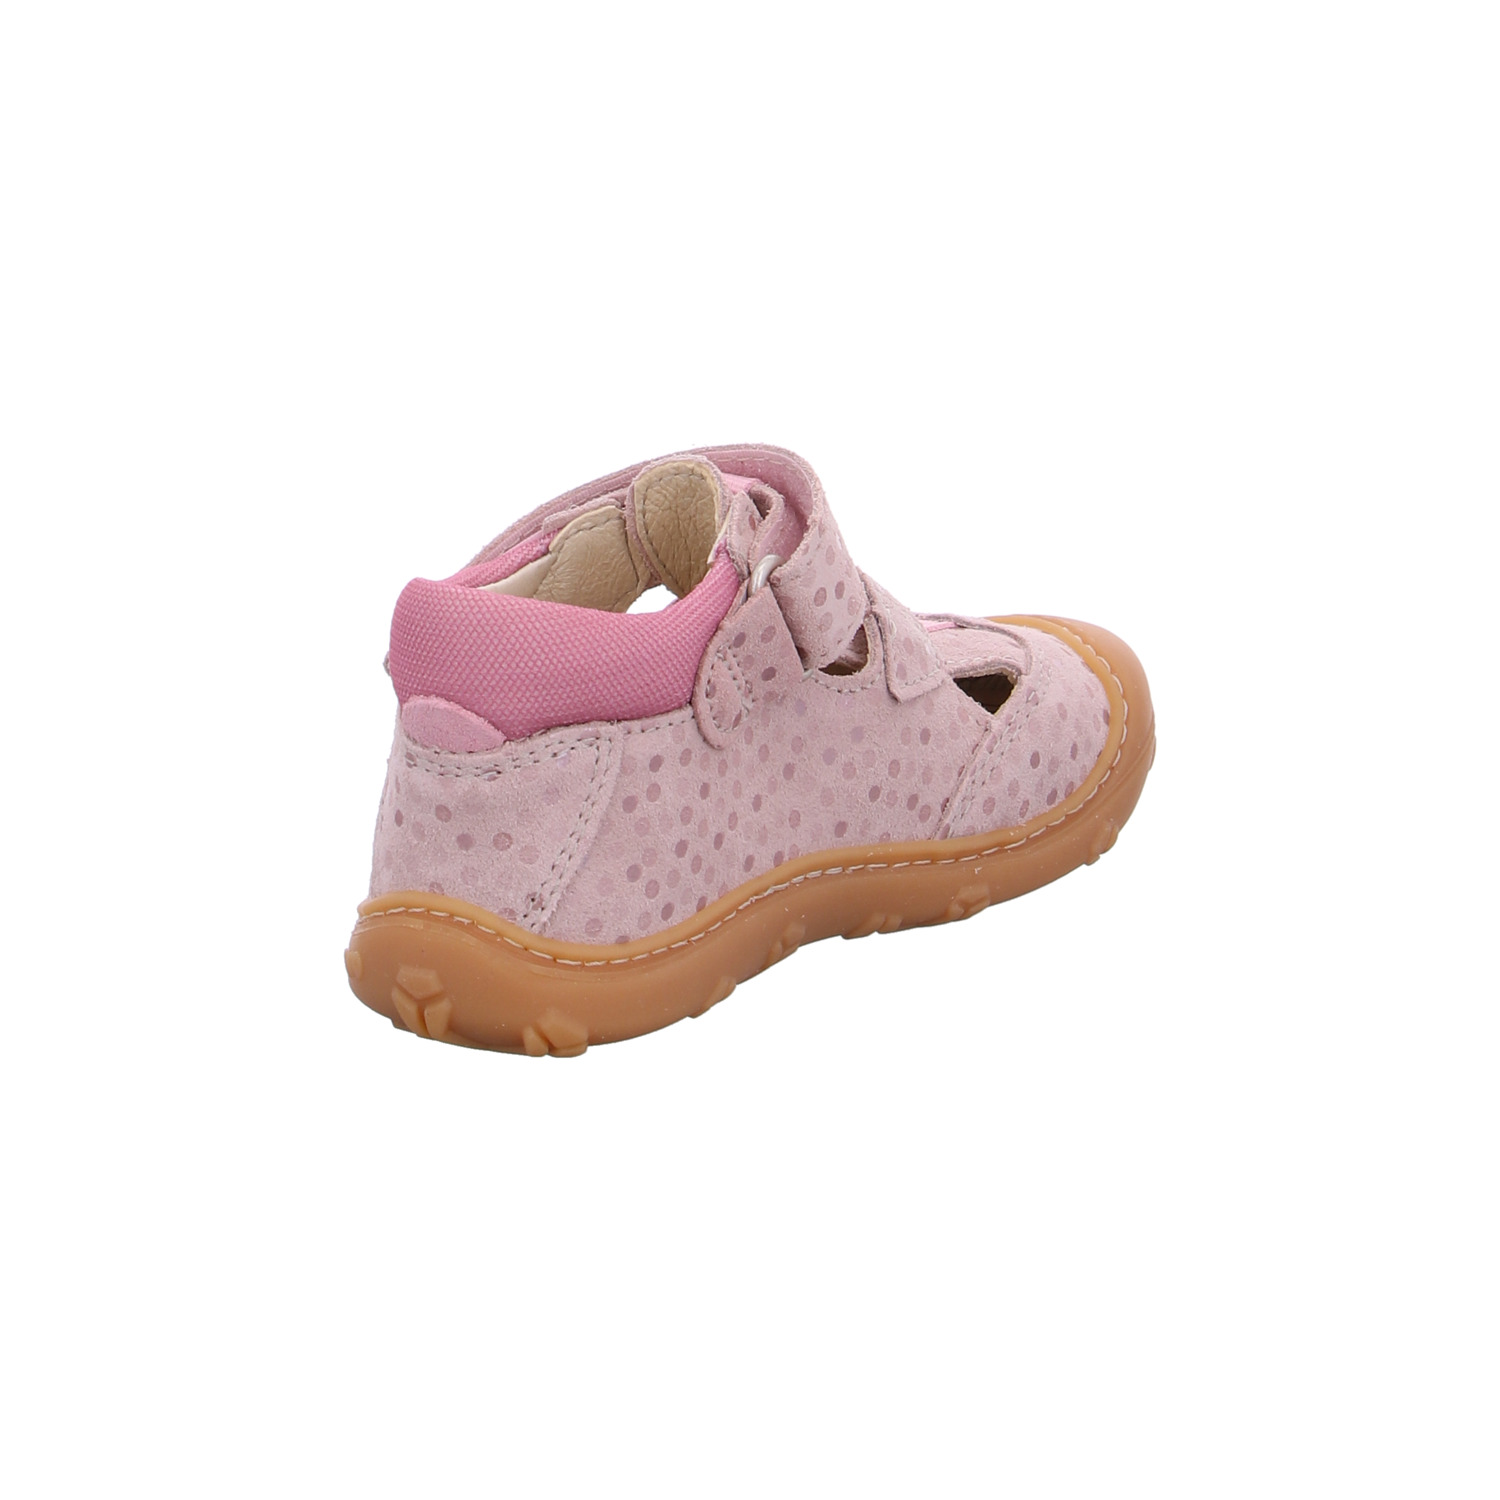 ricosta-kinder-sandaletten-mädchen-rosa-126070-19